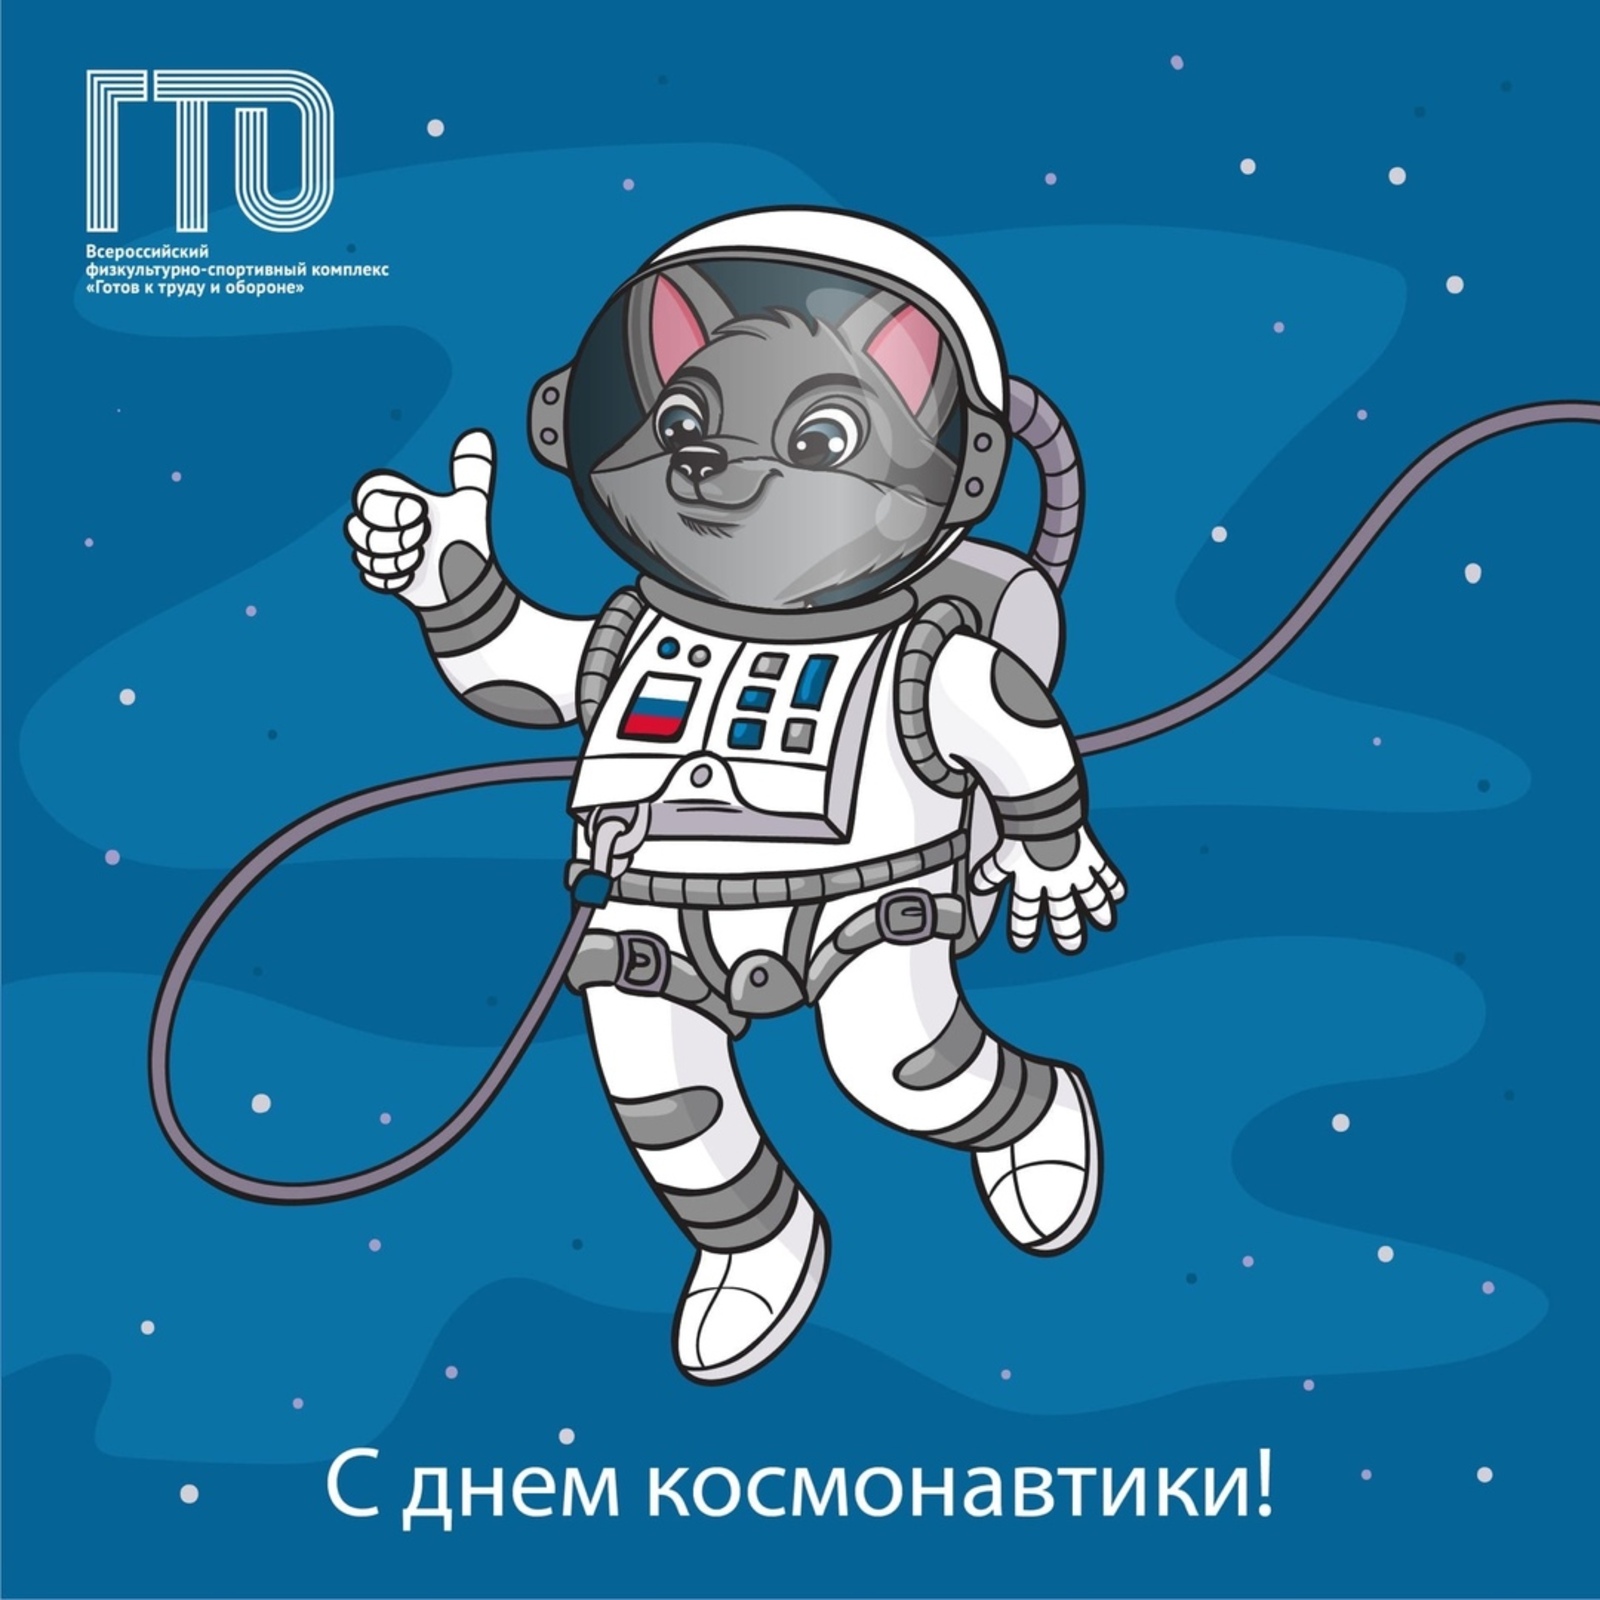 Российские космонавты и ГТО. Есть ли связь?